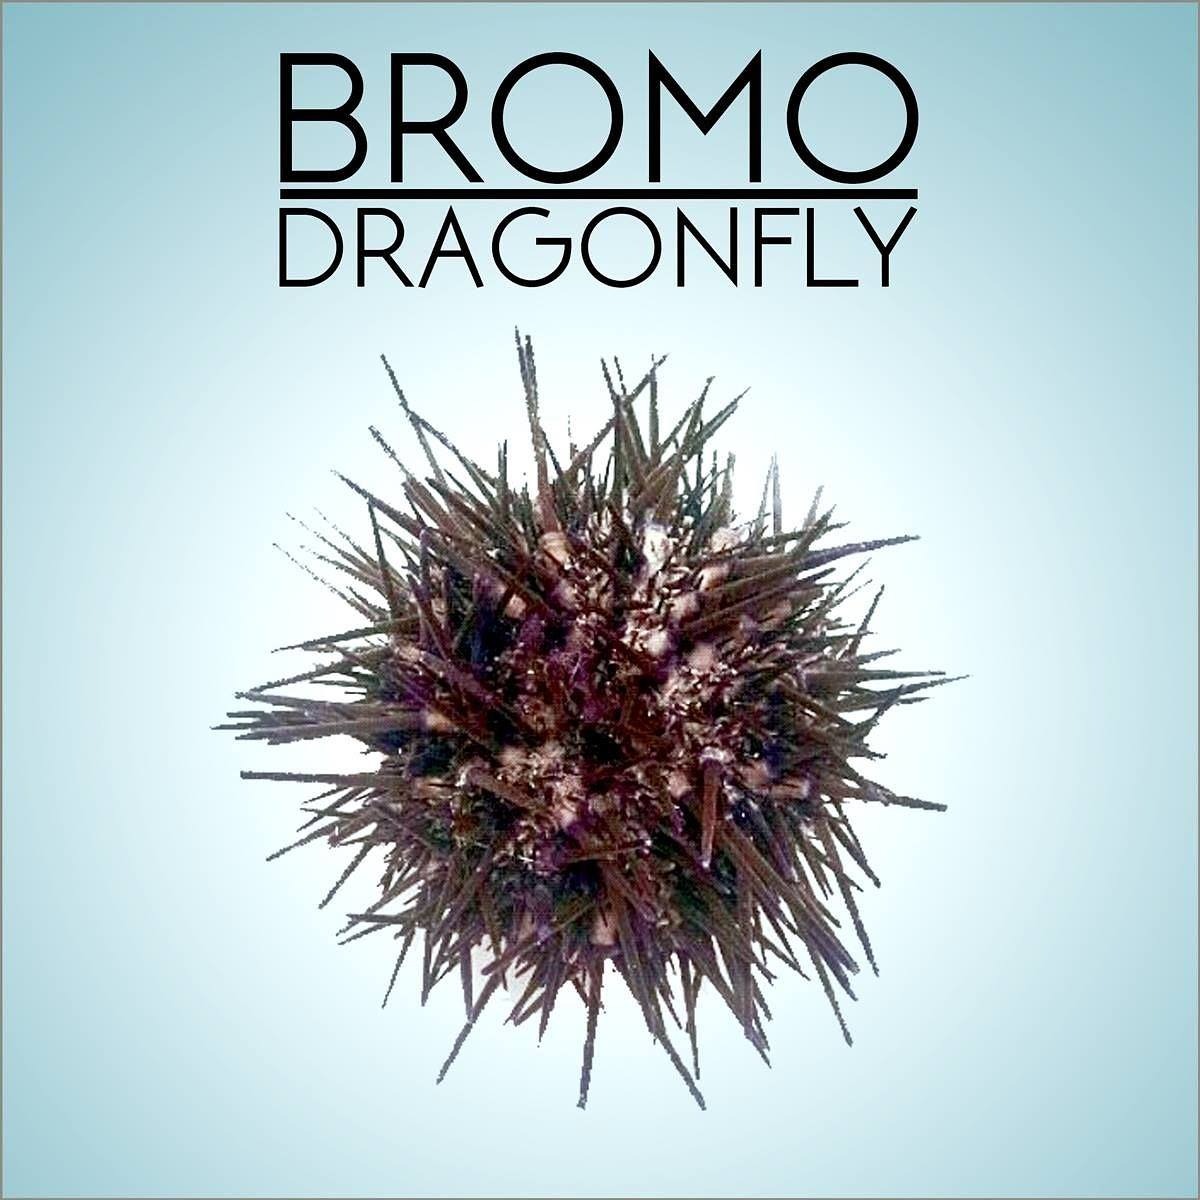 Bromo dragonfly что